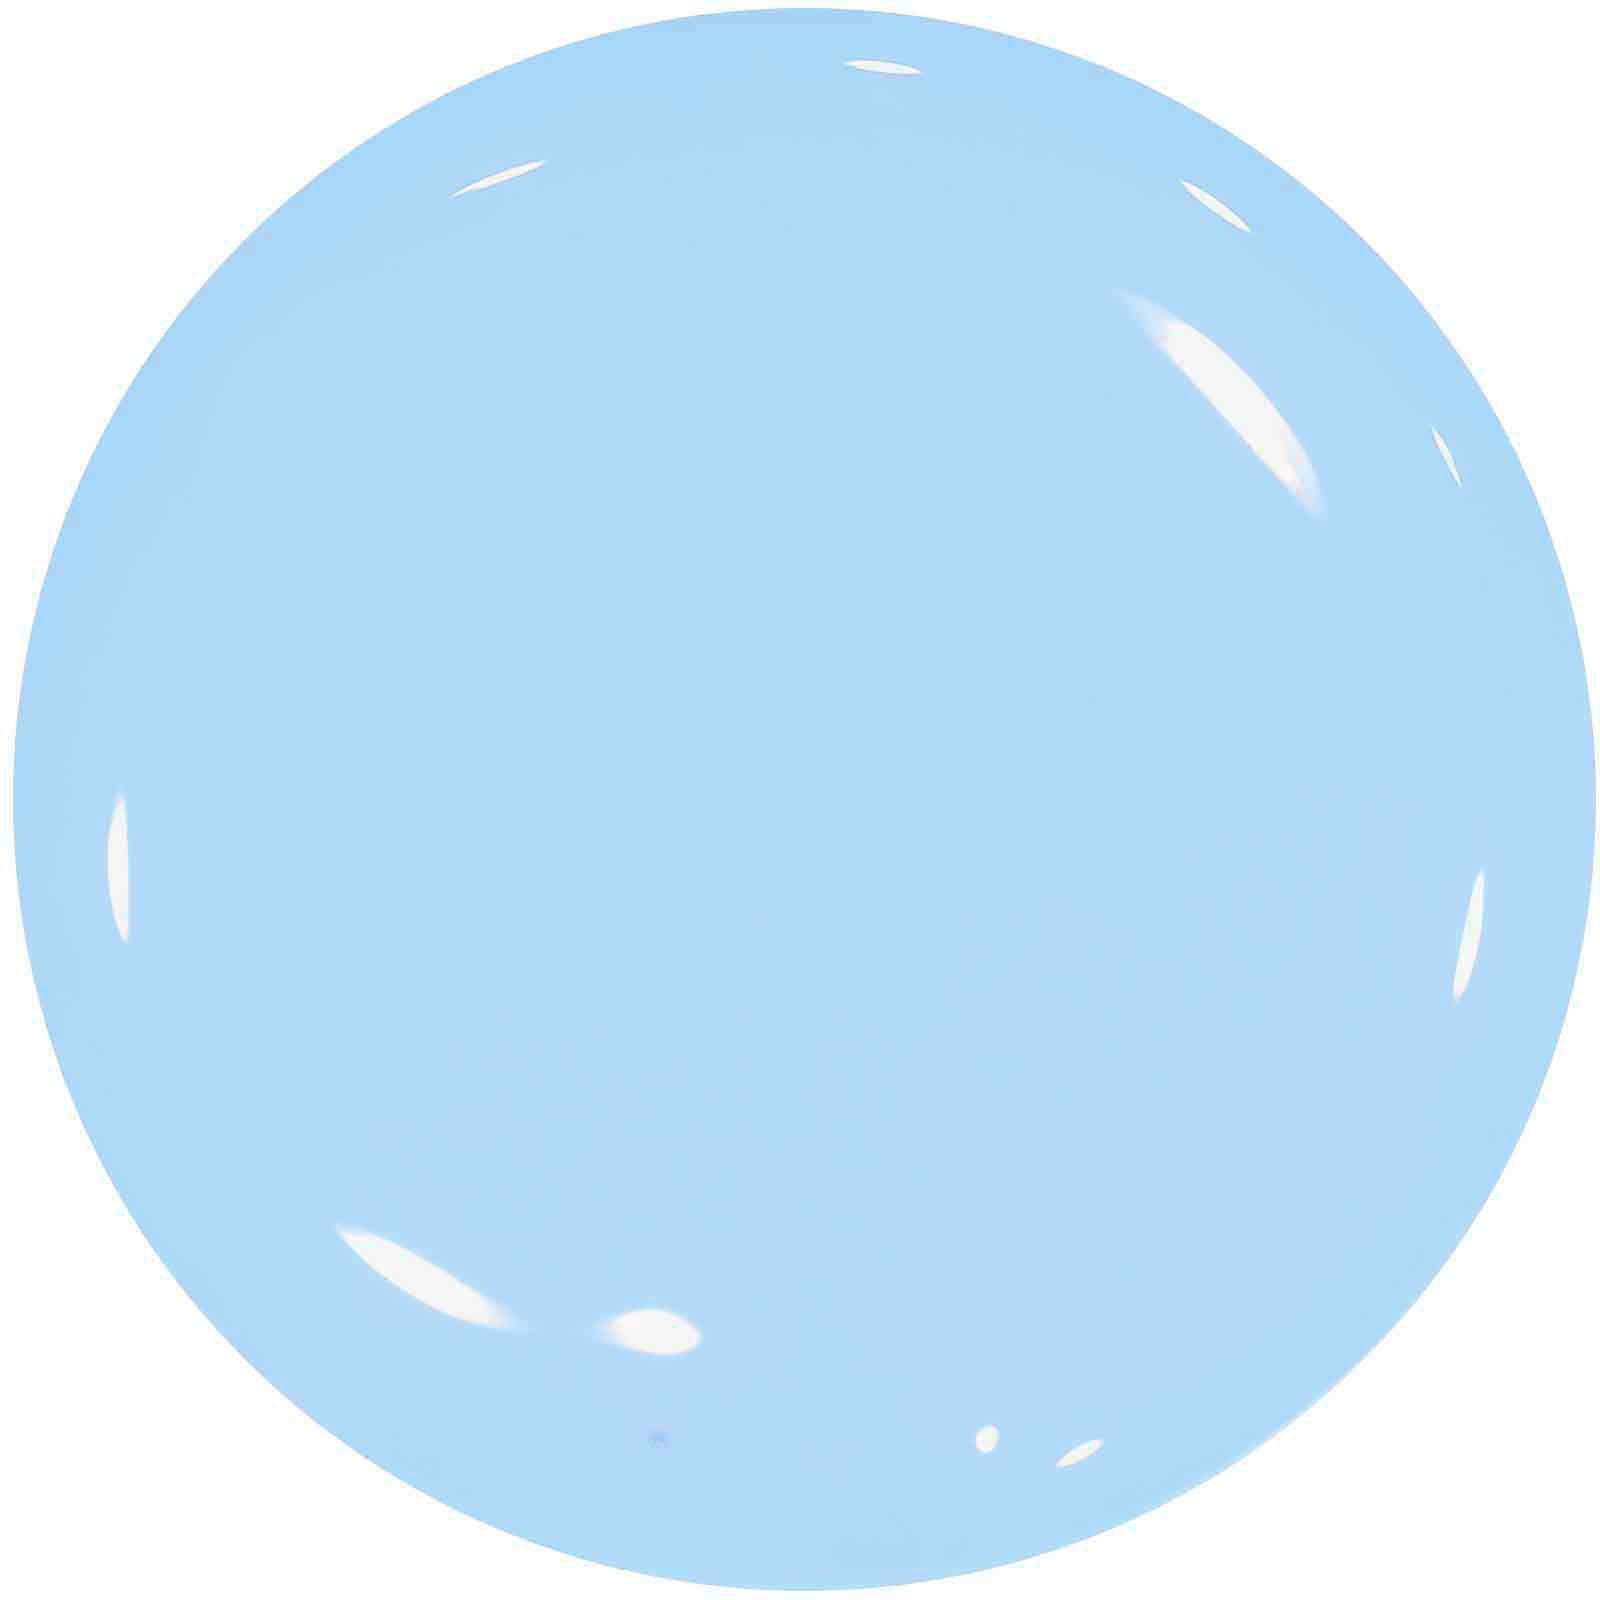 Farebný uv gél - Standard Pastel Blue